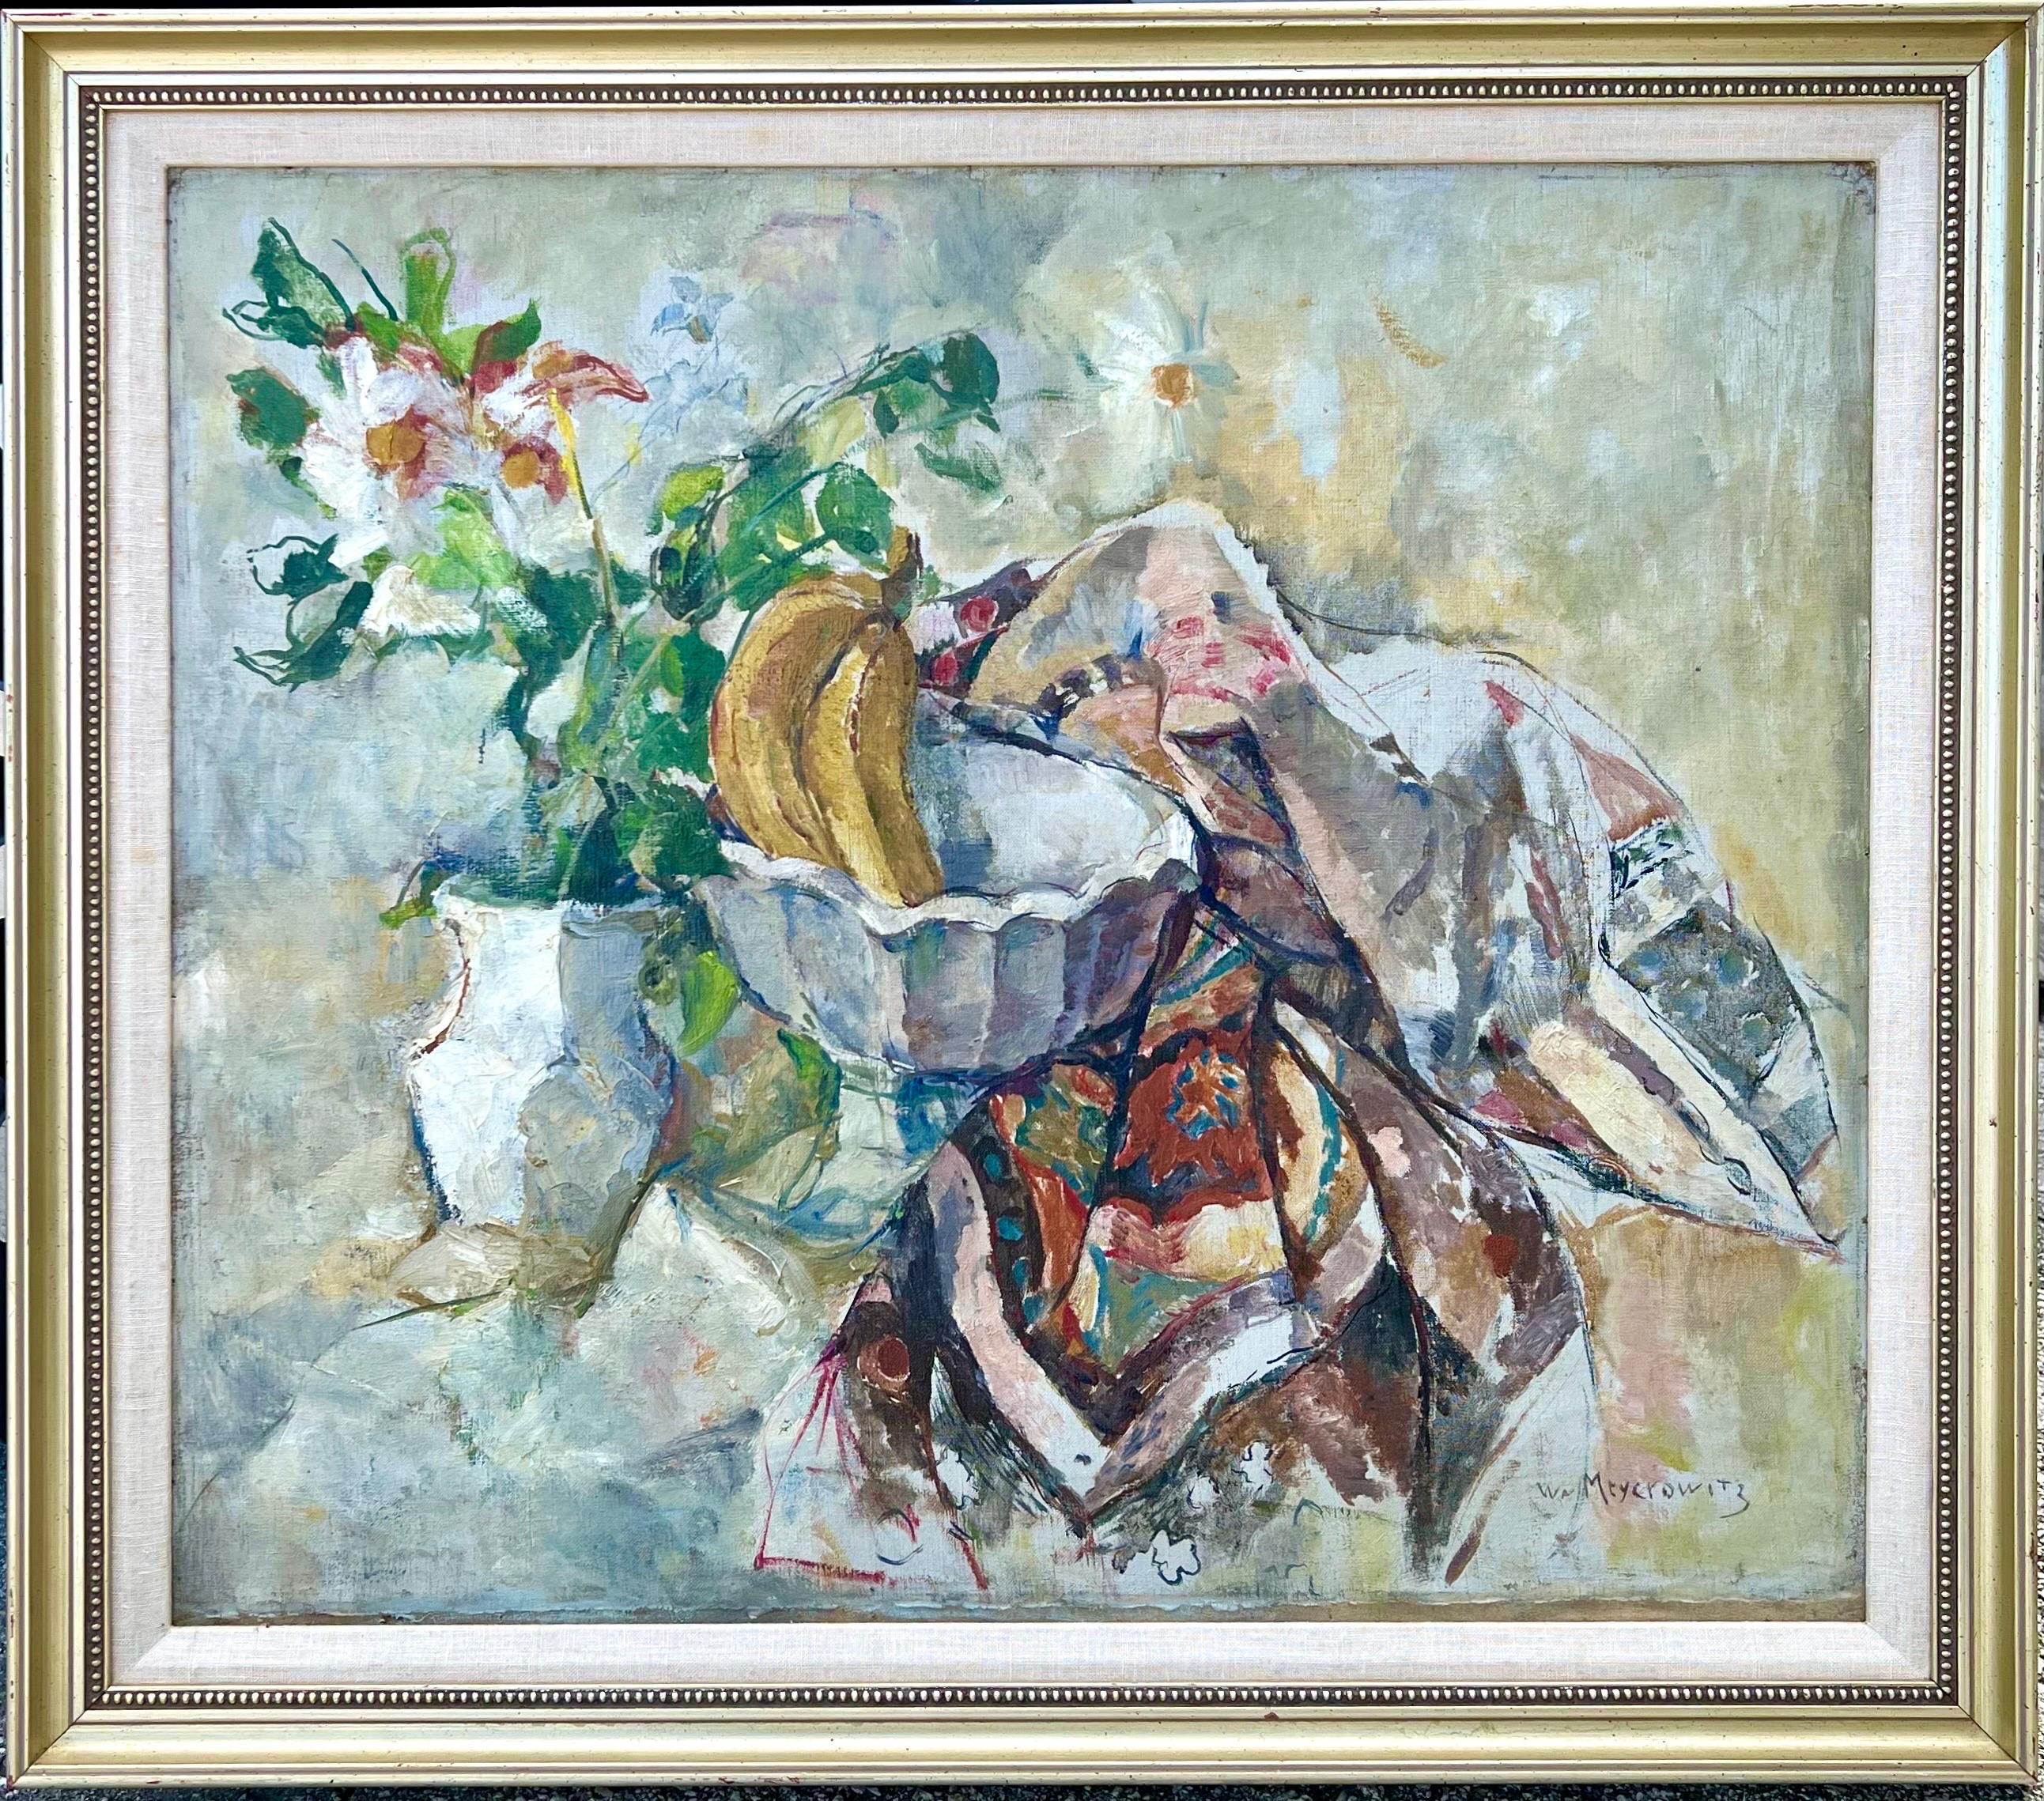 William Meyerowitz (1887 - 1981) 
Ölgemälde auf Leinwand 
Die Darstellung einer  Stillleben mit Obstschale, Bananen,  Blumen und Quilt. Postimpressionistisches Ölgemälde.
Handsigniert unten rechts.  Trägt eine Unterschrift, aber kein